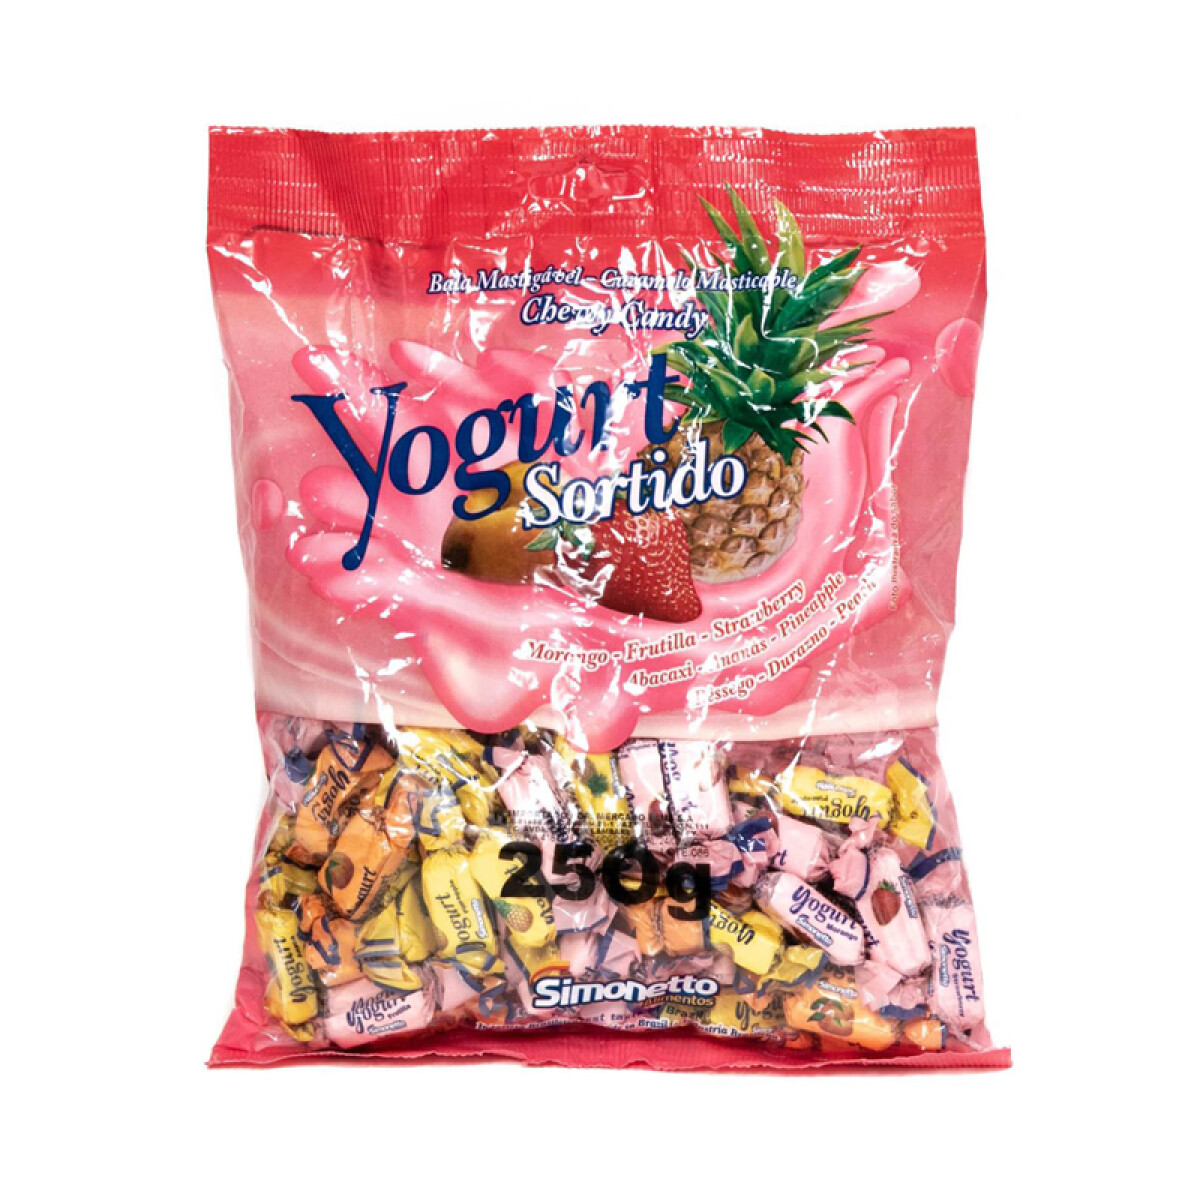 Caramelos masticables SIMONETTO X100U 300grs - Yogurt 